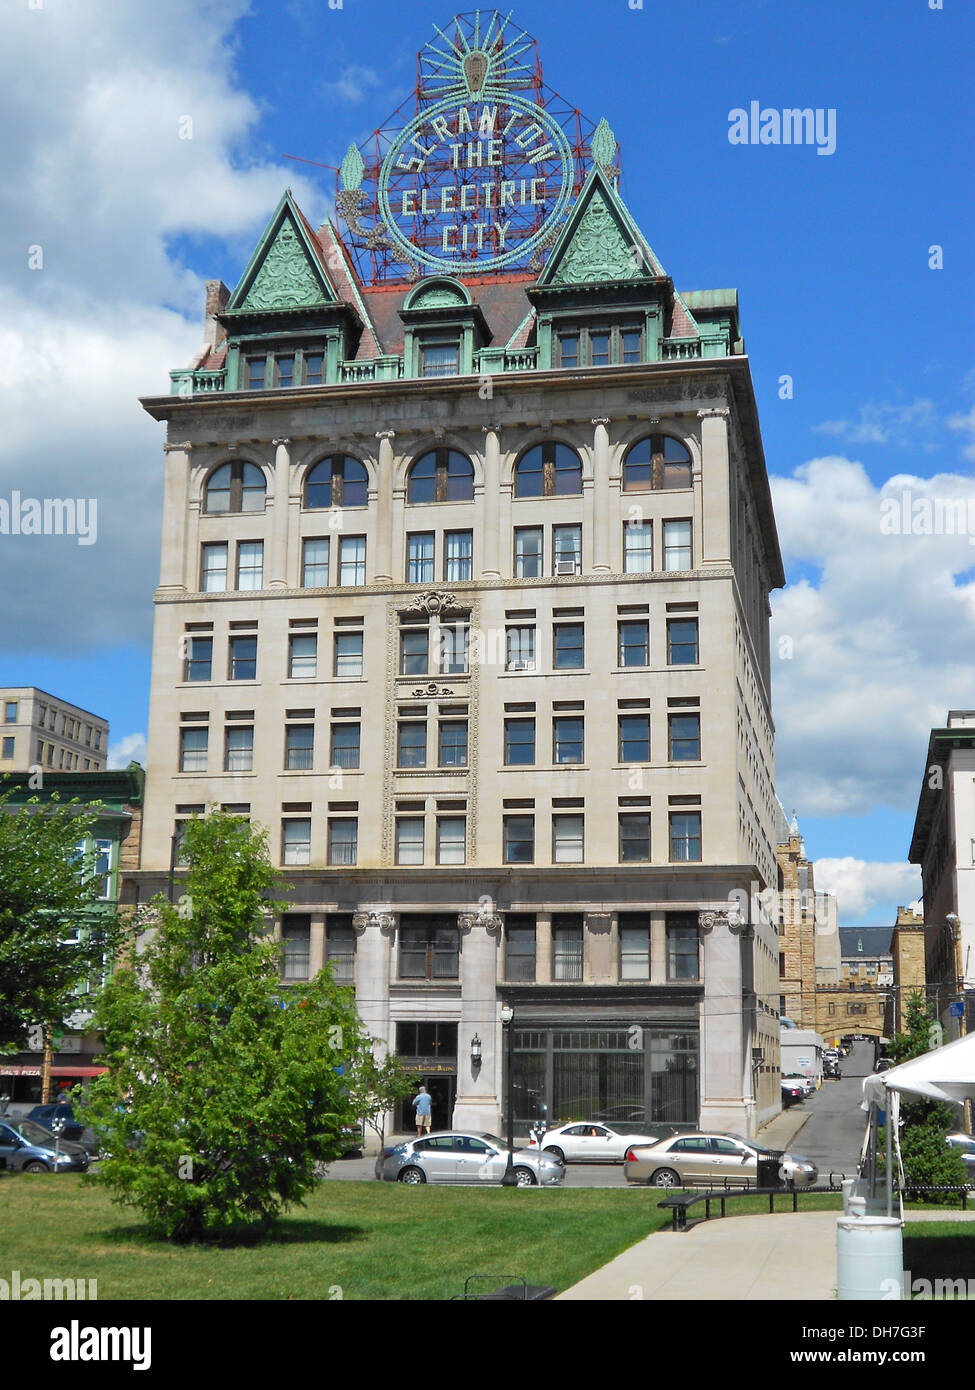 Gebäude in Scranton, Lackawanna County, Pennsylvania. Dieses Gebäude ist auf dem Gerichtsgebäude Platz und ist berühmt für die "Electric City" Schild auf dem Dach Stockfoto